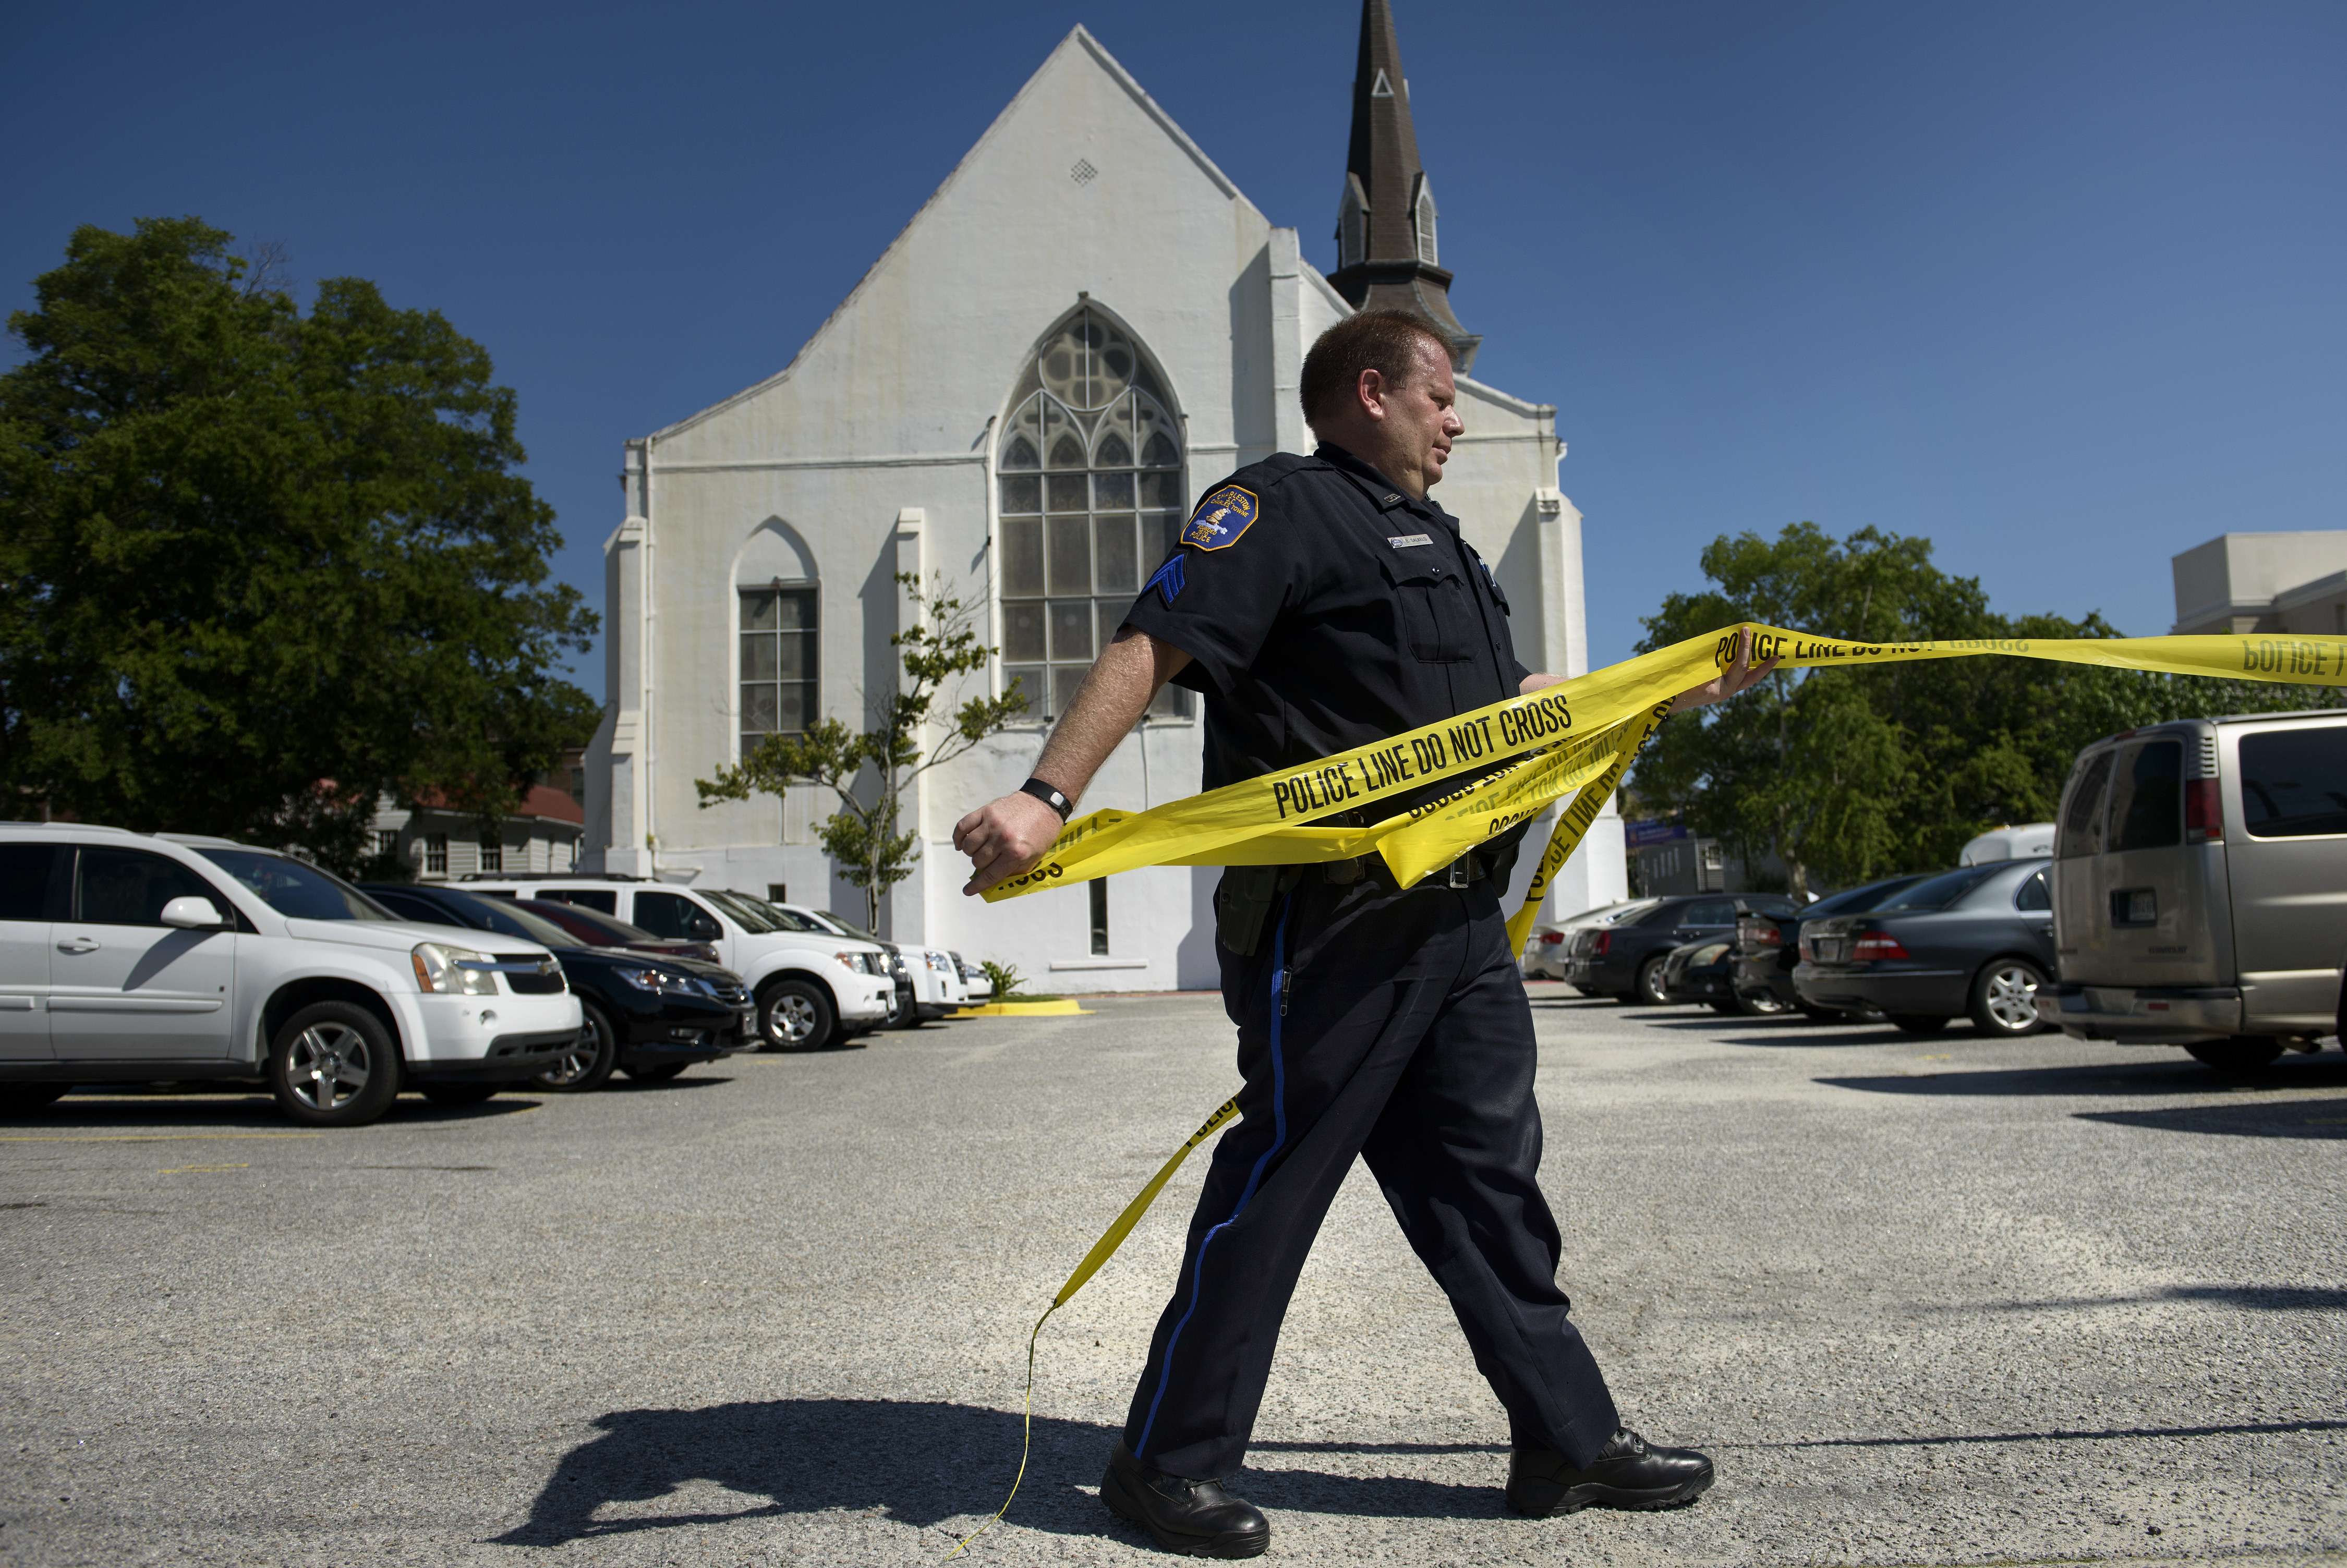 Polizist beseitigt Absperrung vor Kirche in Charleston | AFP